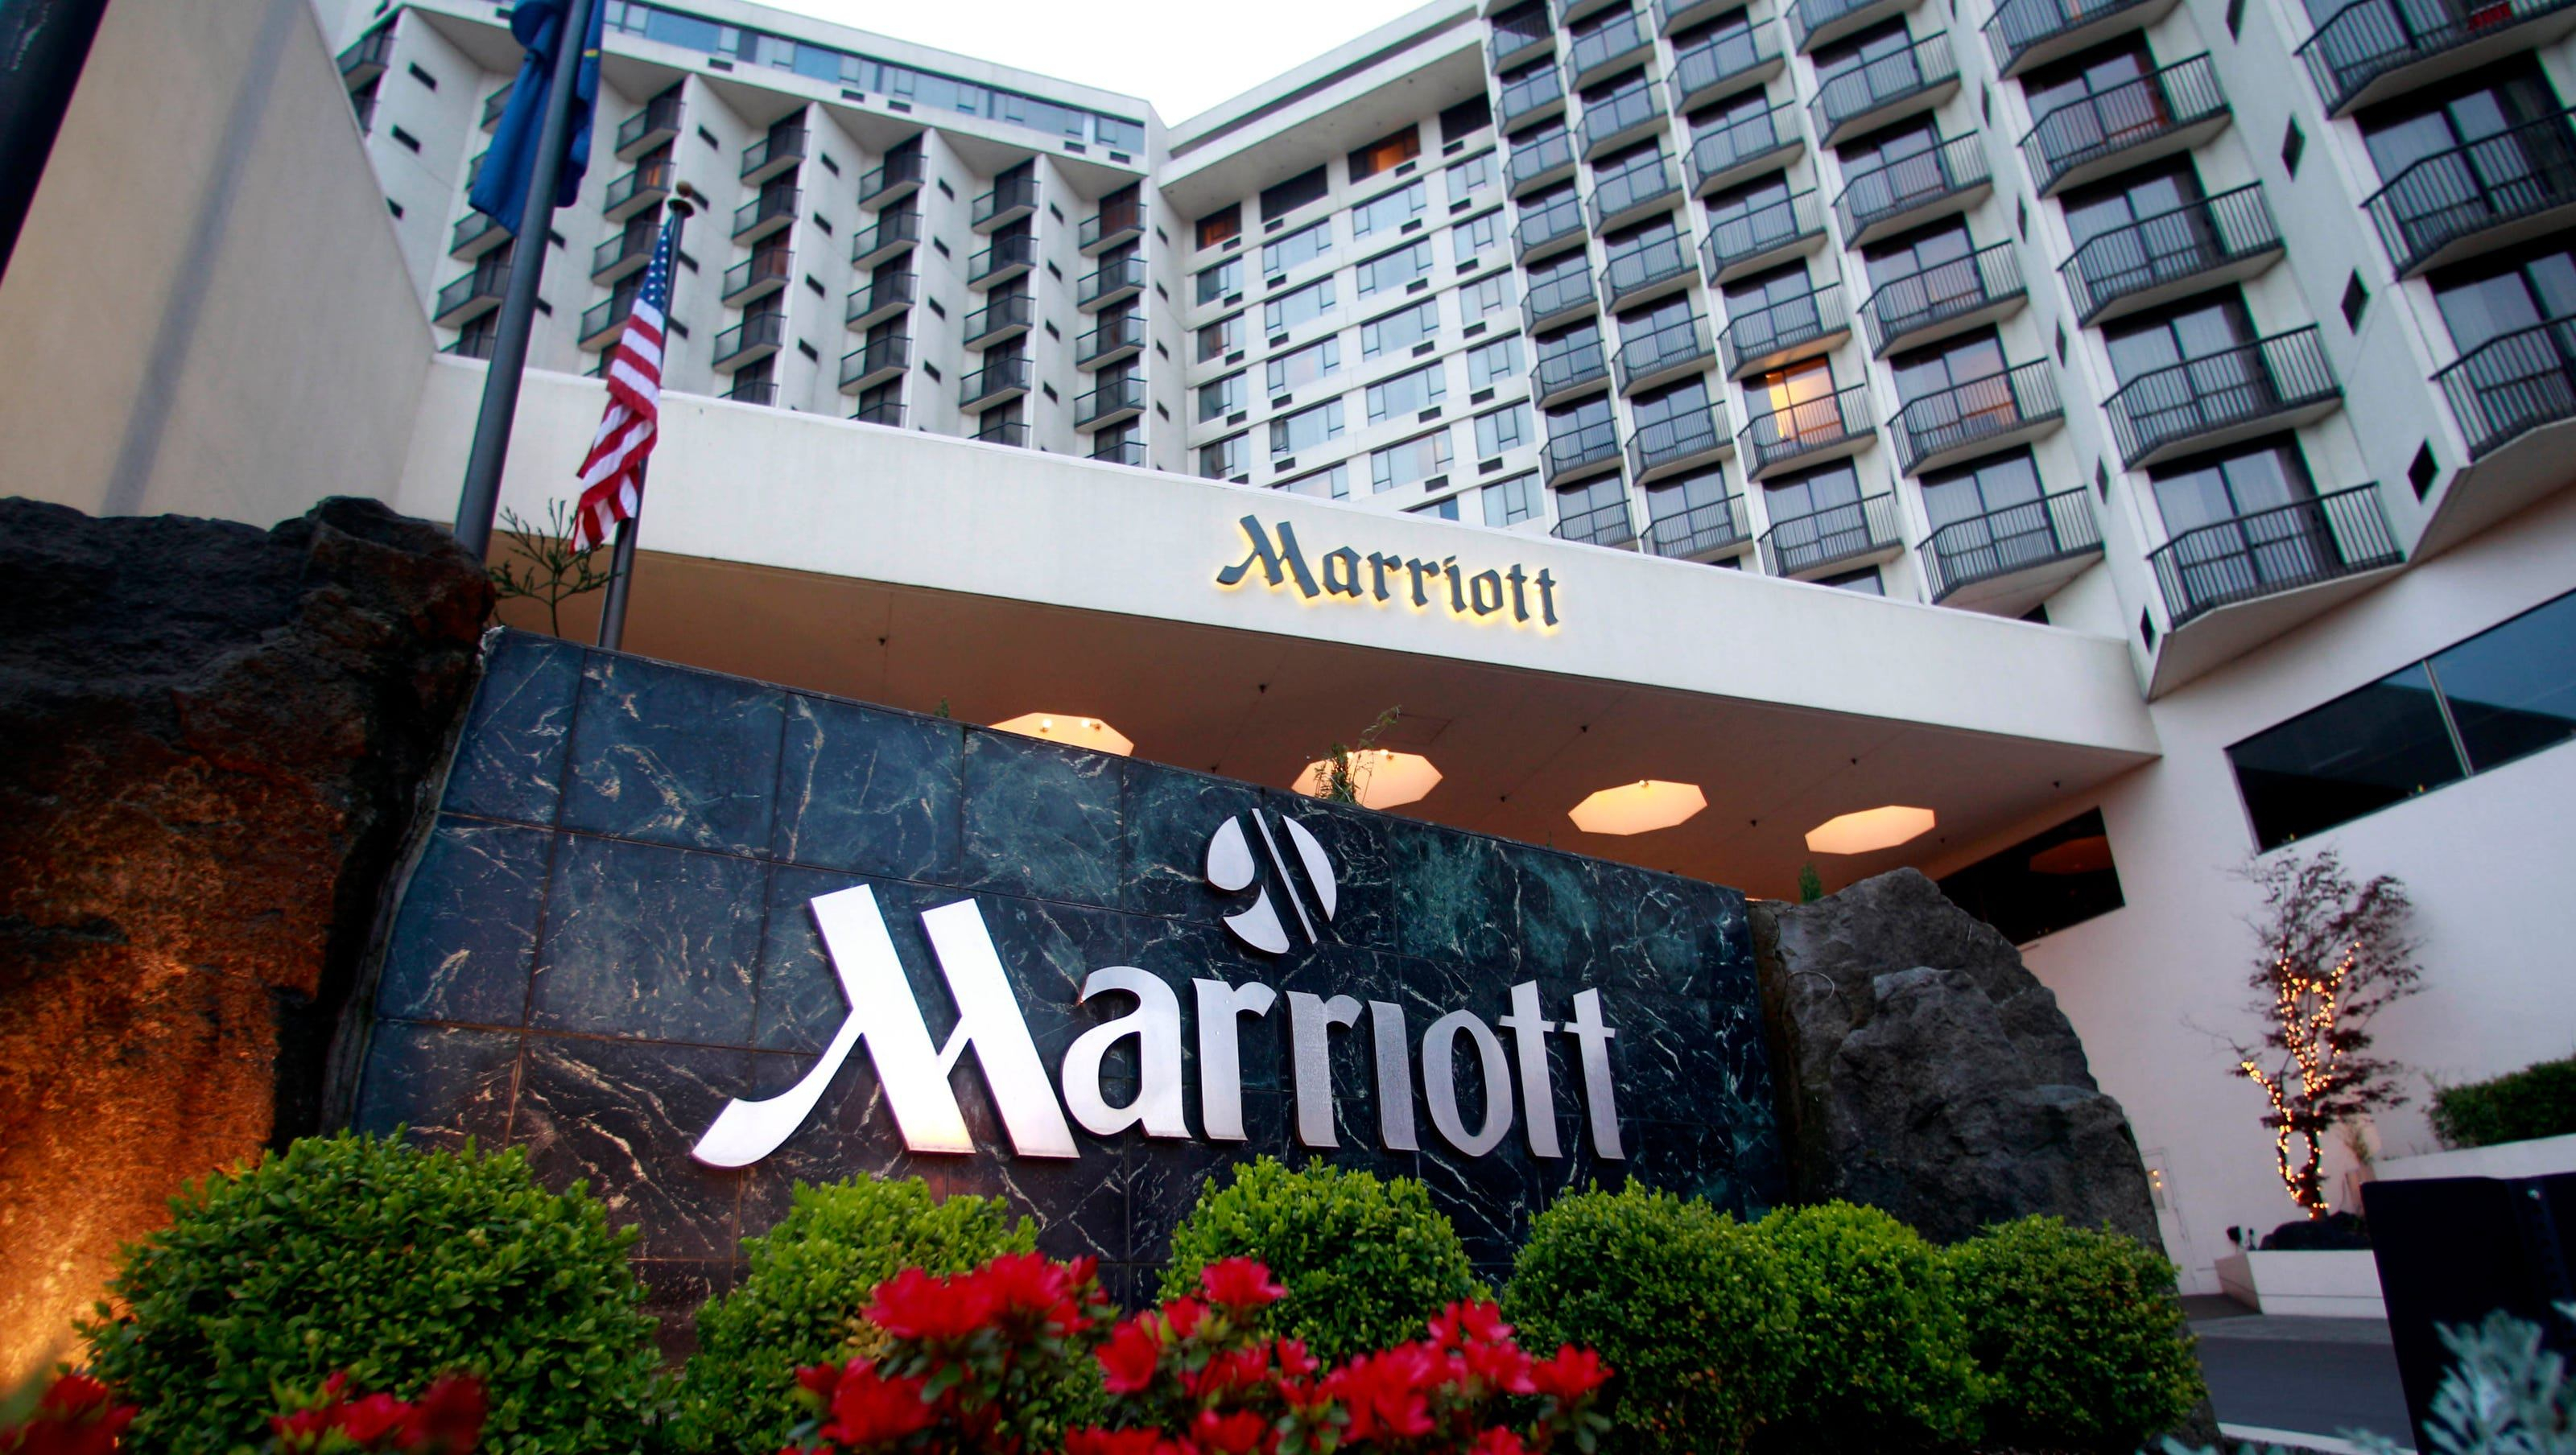 Відомий готельний бренд Marriott нарешті призупиняє всю діяльність у Росії